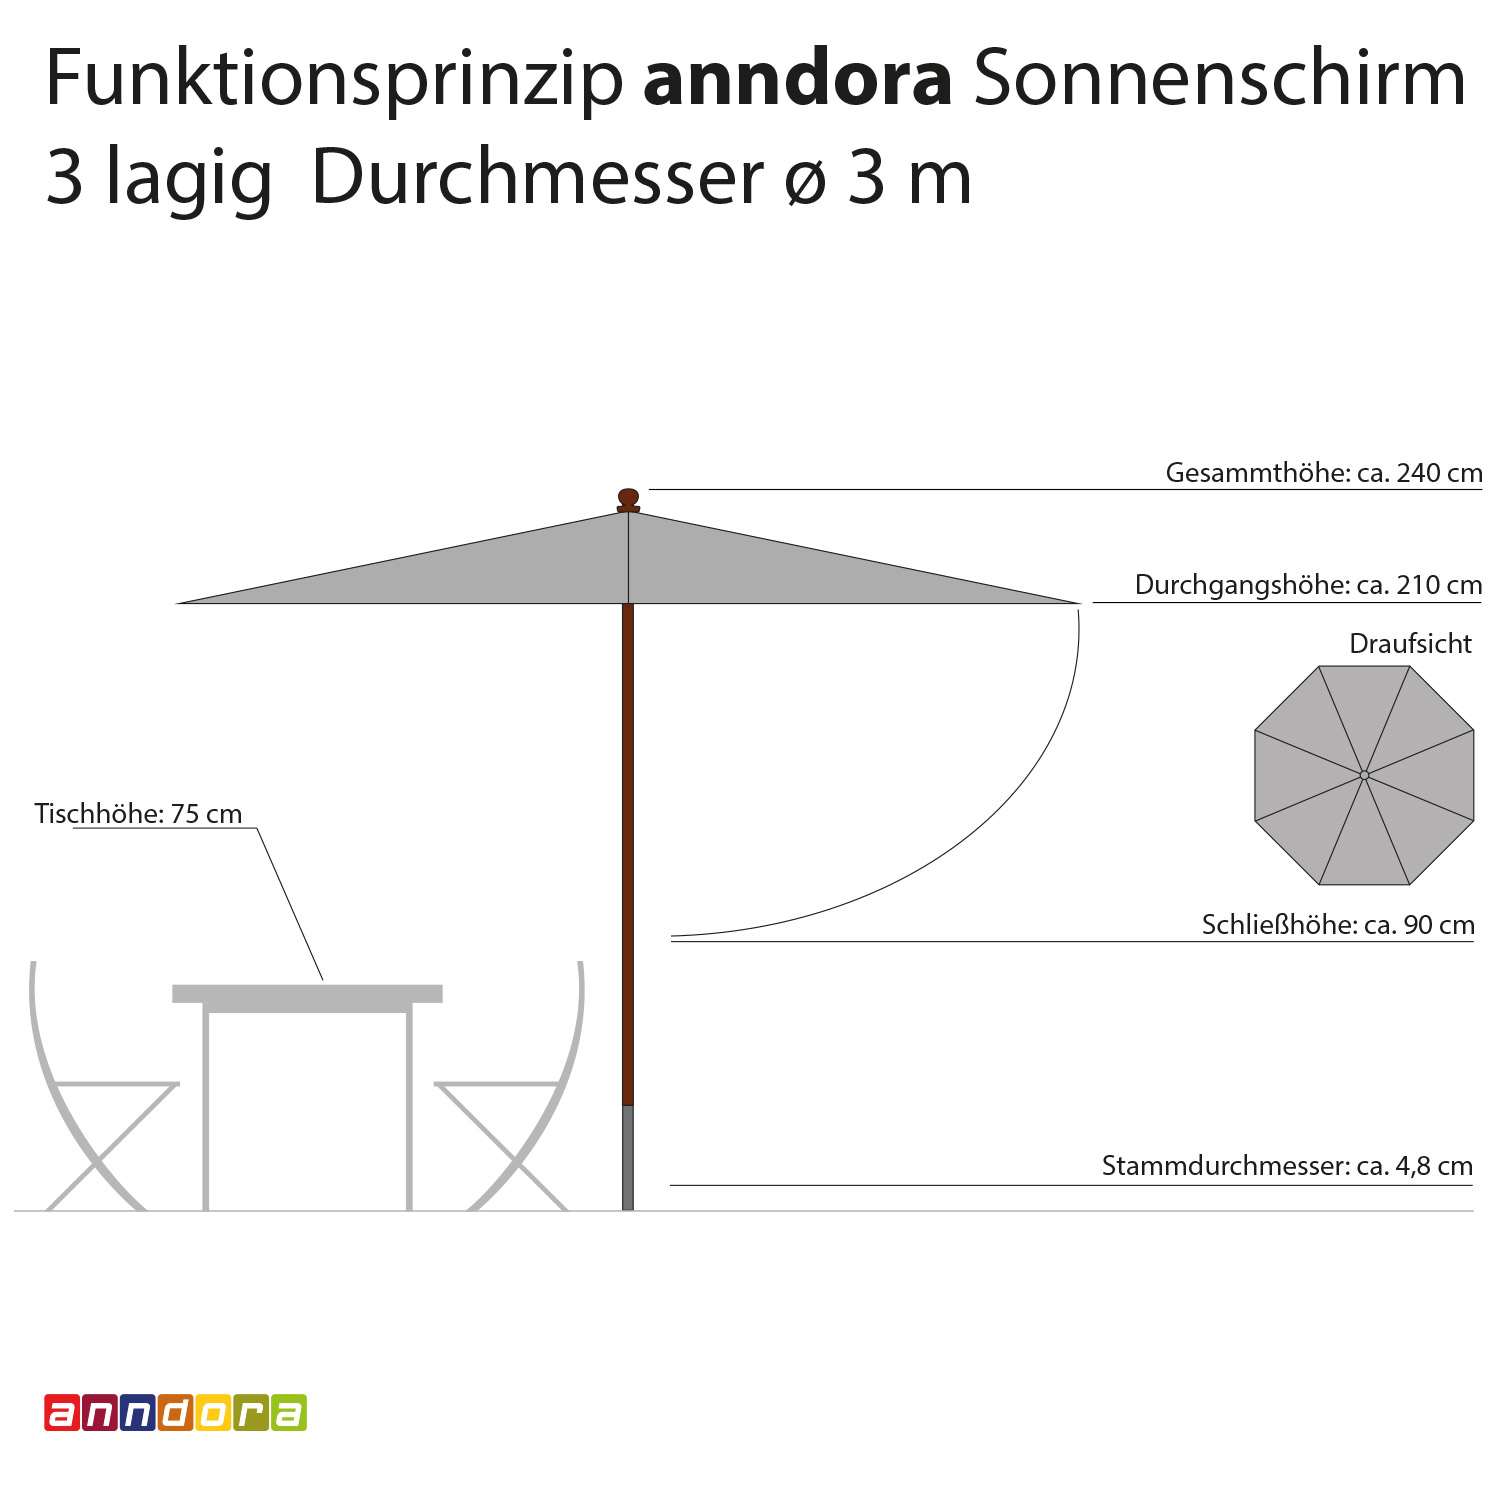 anndora Sonnenschirm 3m Design Schirm rund 3-lagig √ Terrassenschirm für den Tisch √ Gartenschirm √ Stammschutz √ Stamm zerlegbar √ Seilzug Öffnung - 2